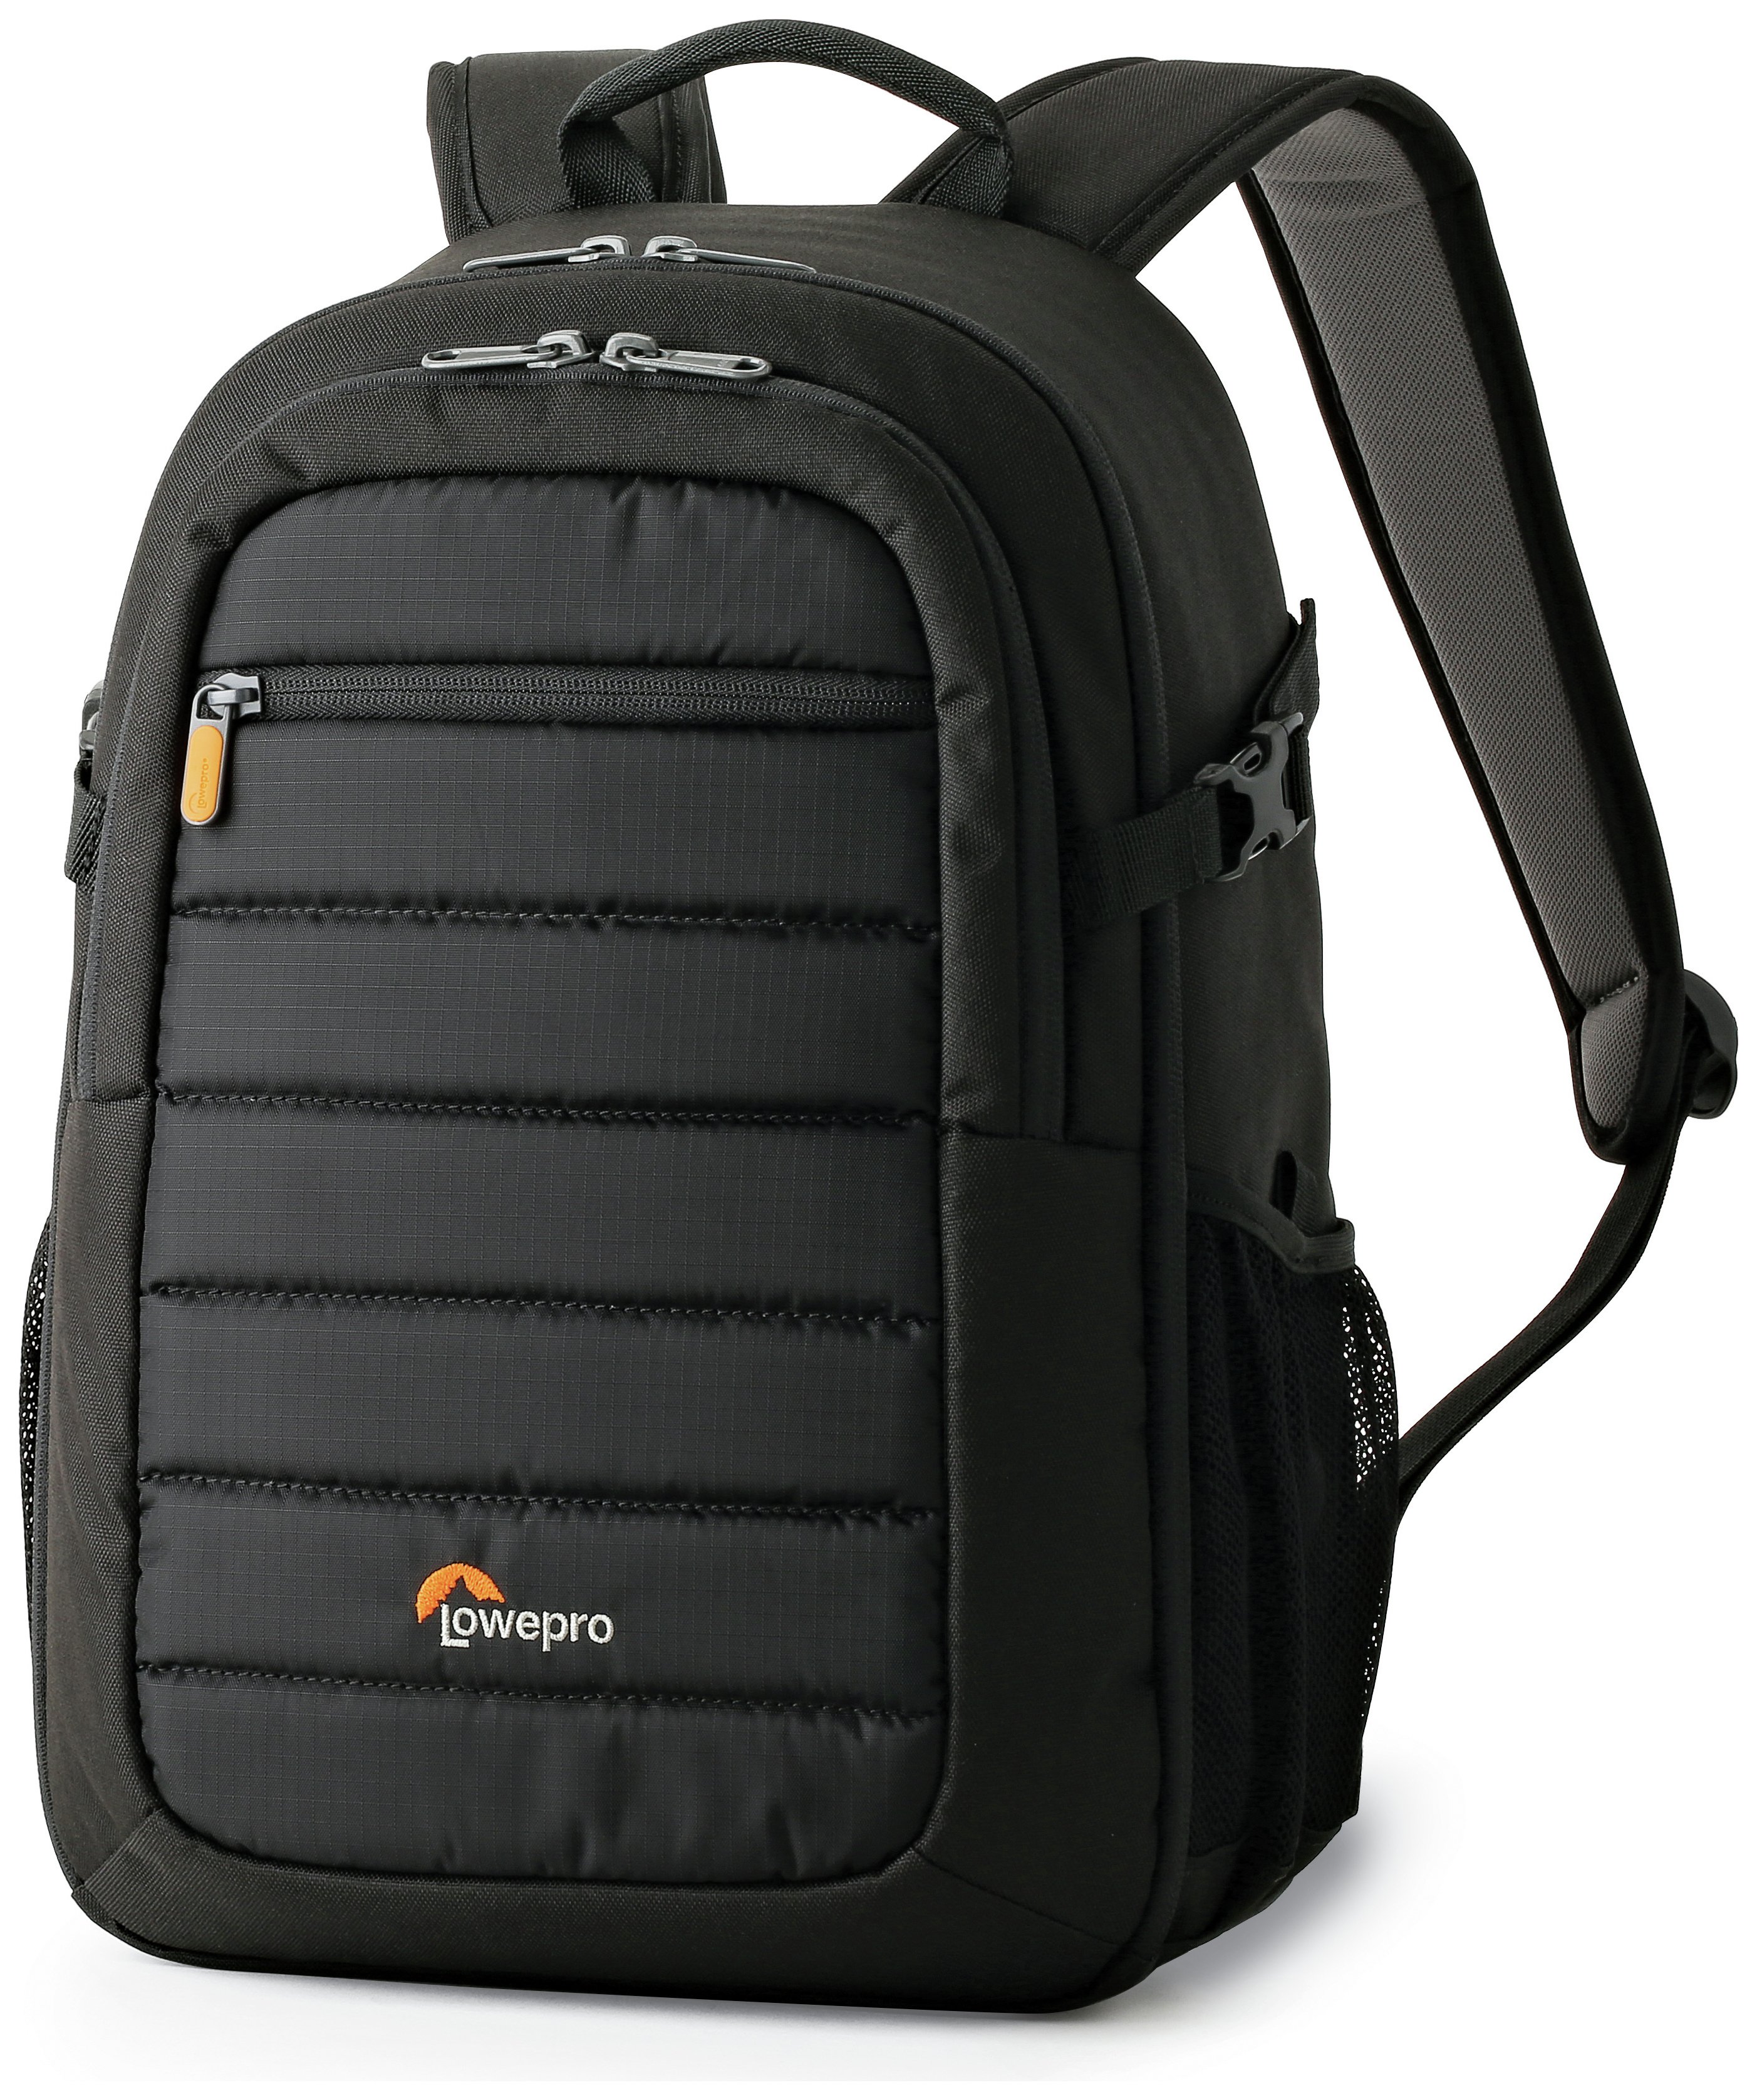 Lowepro Tahoe BP150 Backpack Review